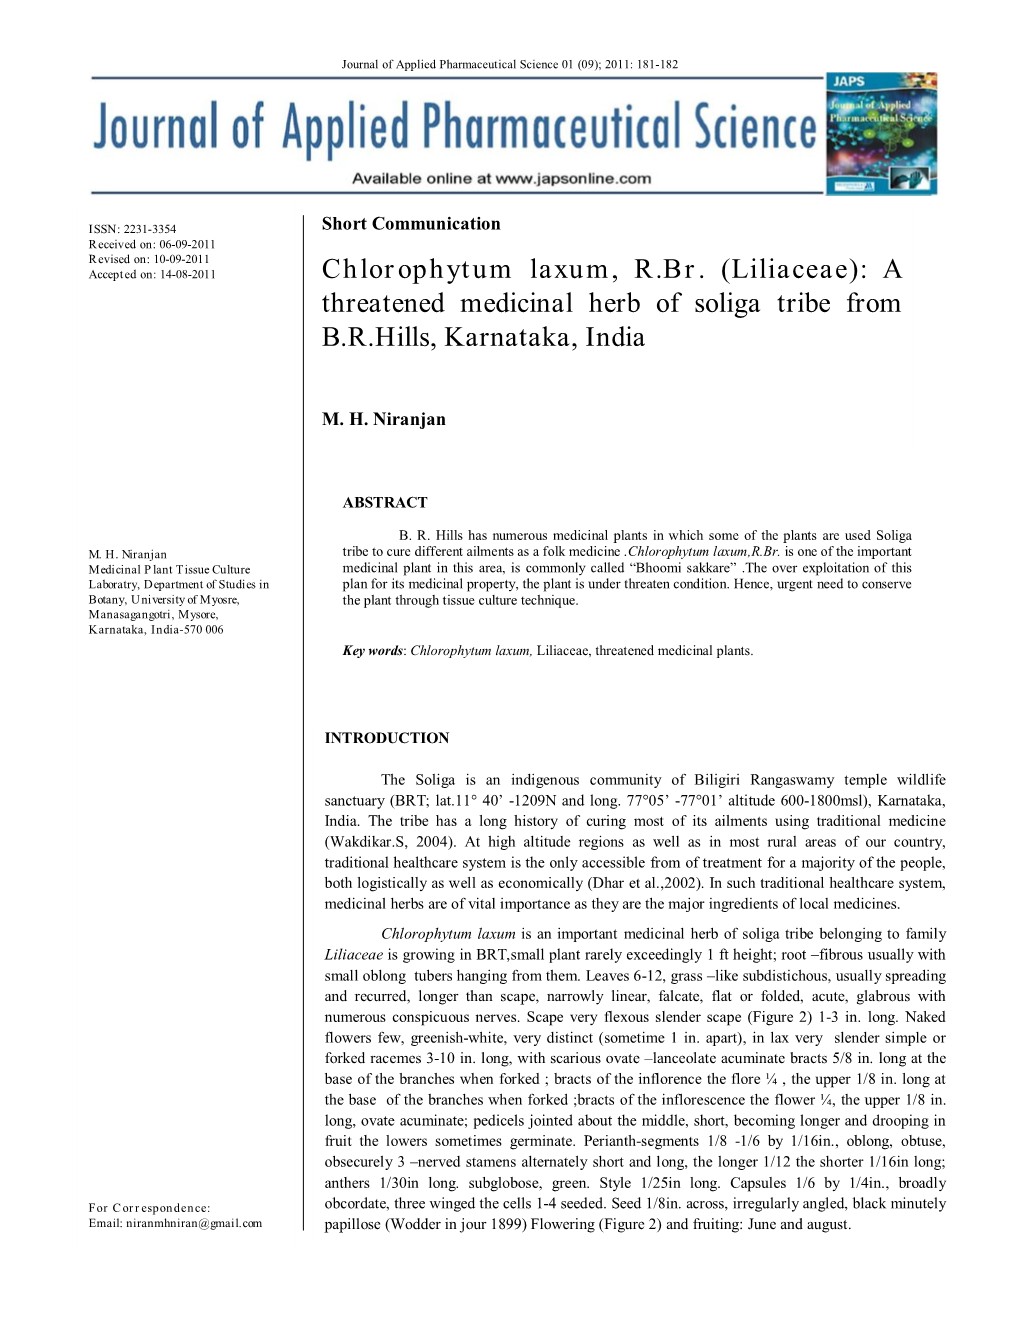 Chlorophytum Laxum, R.Br. (Liliaceae): a Threatened Medicinal Herb of Soliga Tribe from B.R.Hills, Karnataka, India